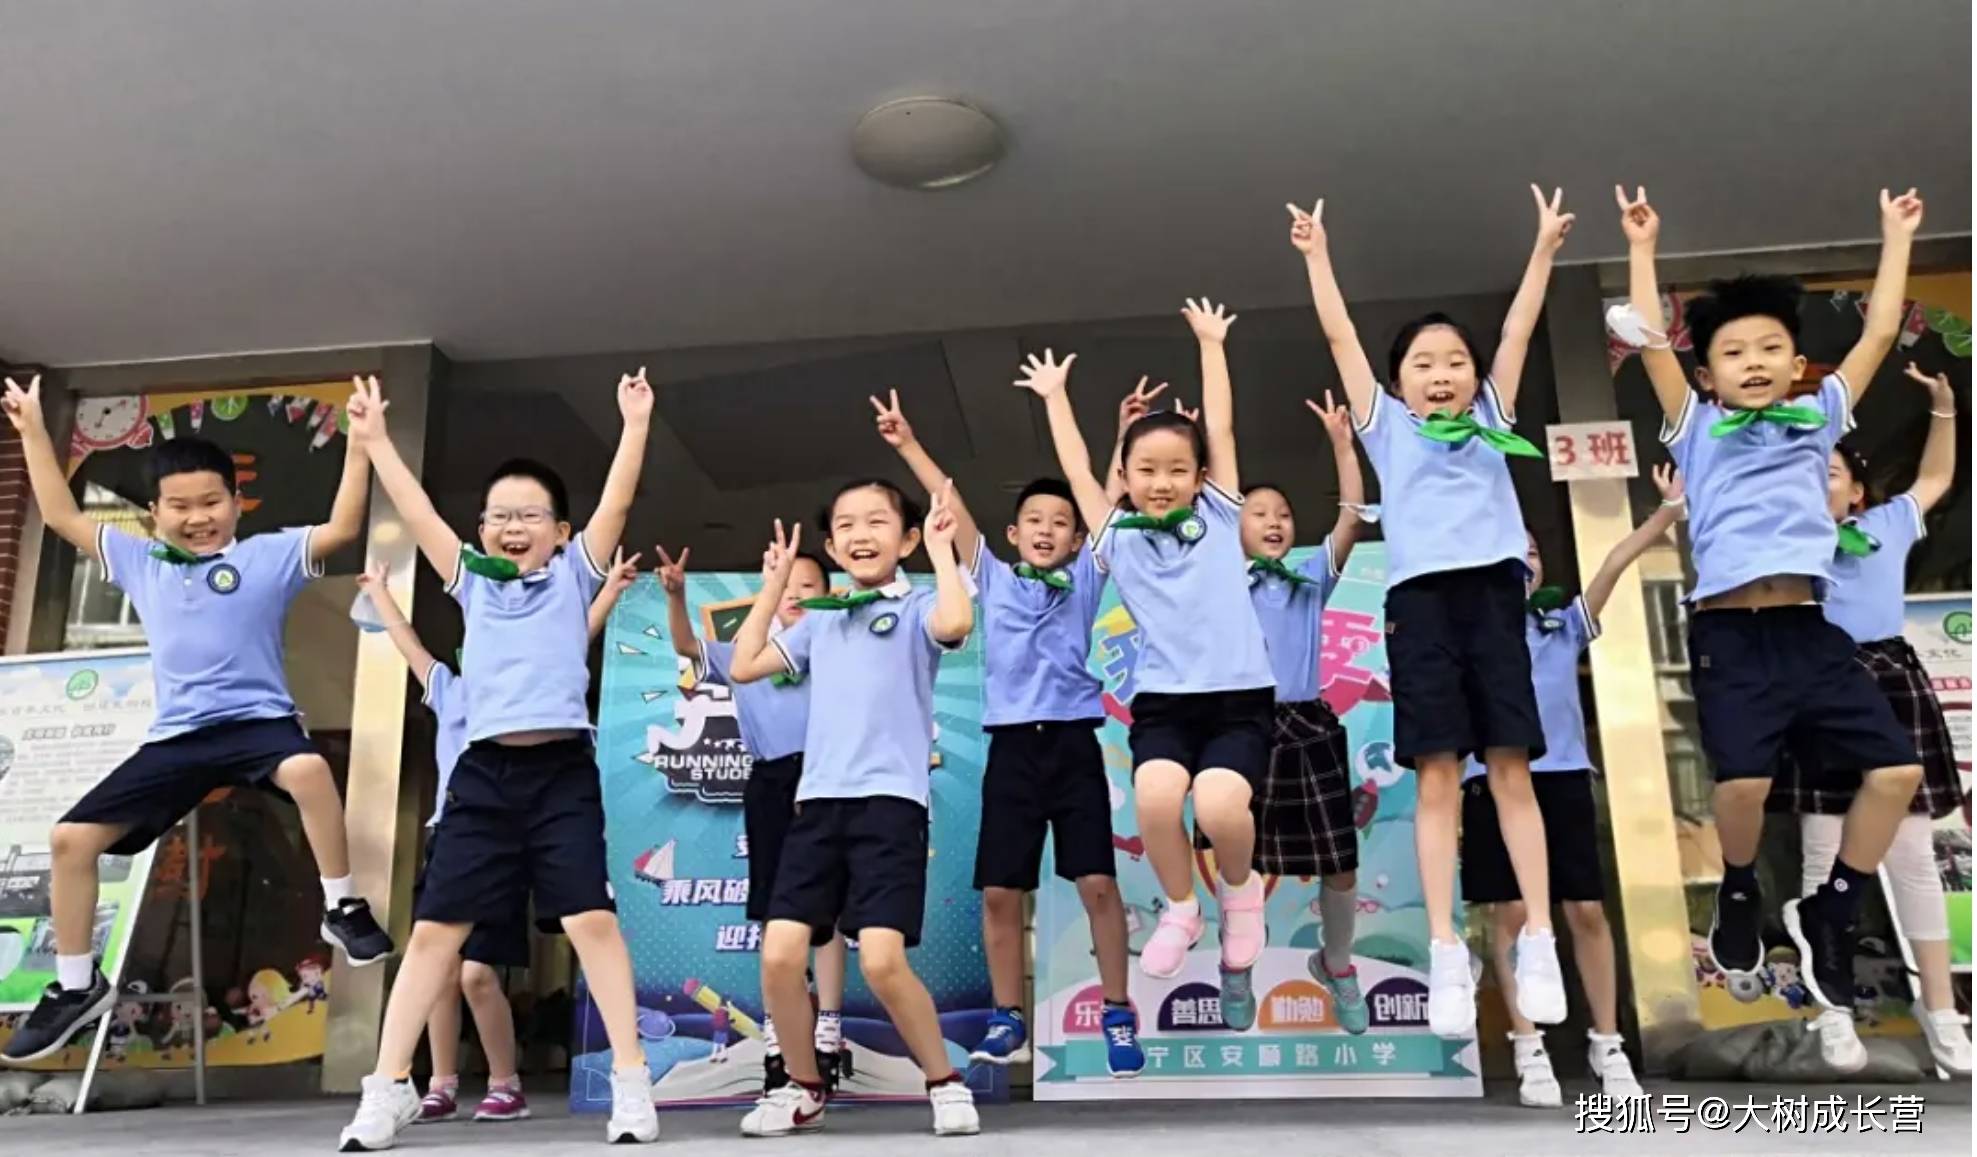 上海将开办近60所中小学!生源猛增,2035年才呈下降趋势